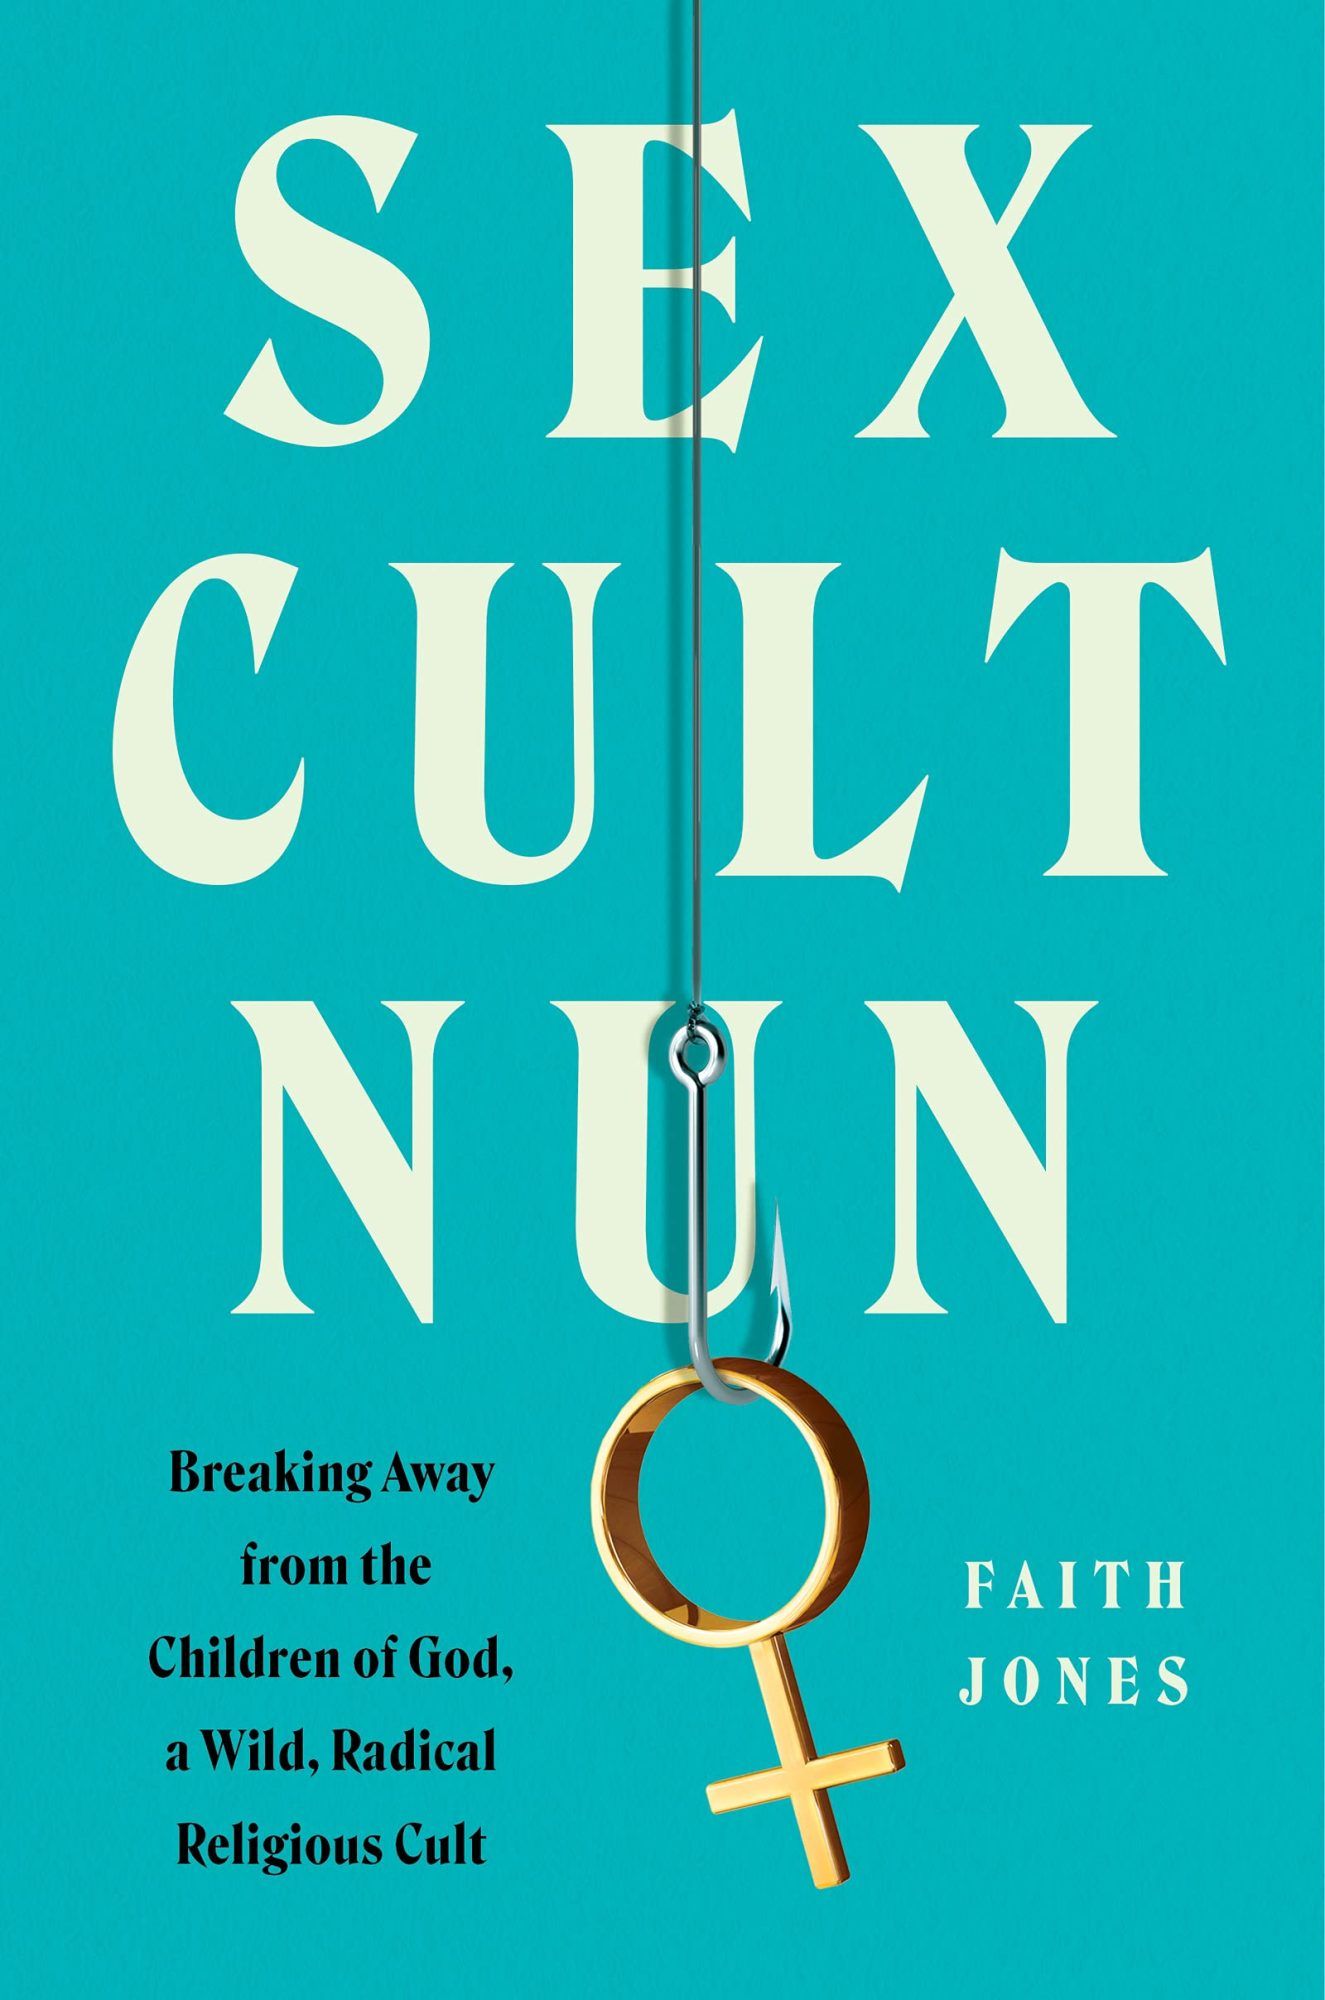 Buchcover von Sex Cult Nun von Faith Jones